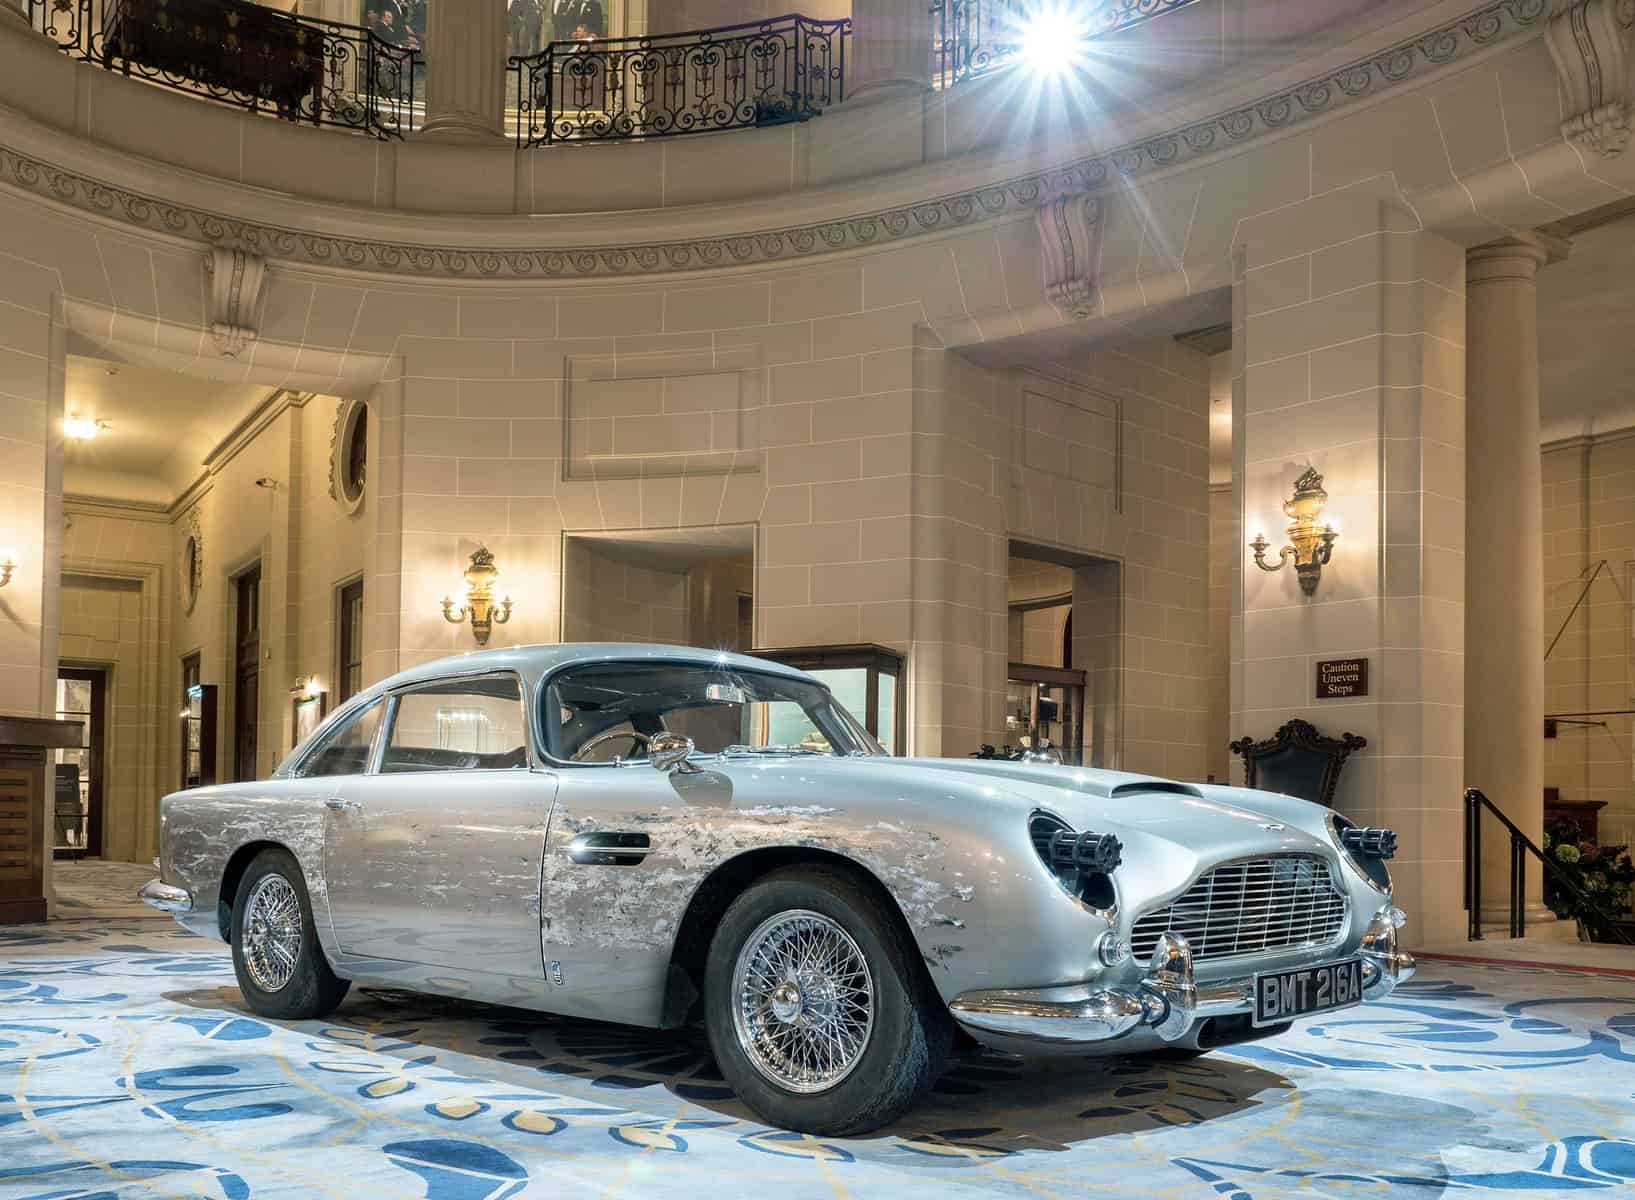 James Bond Aston Martin Gadget car 2021